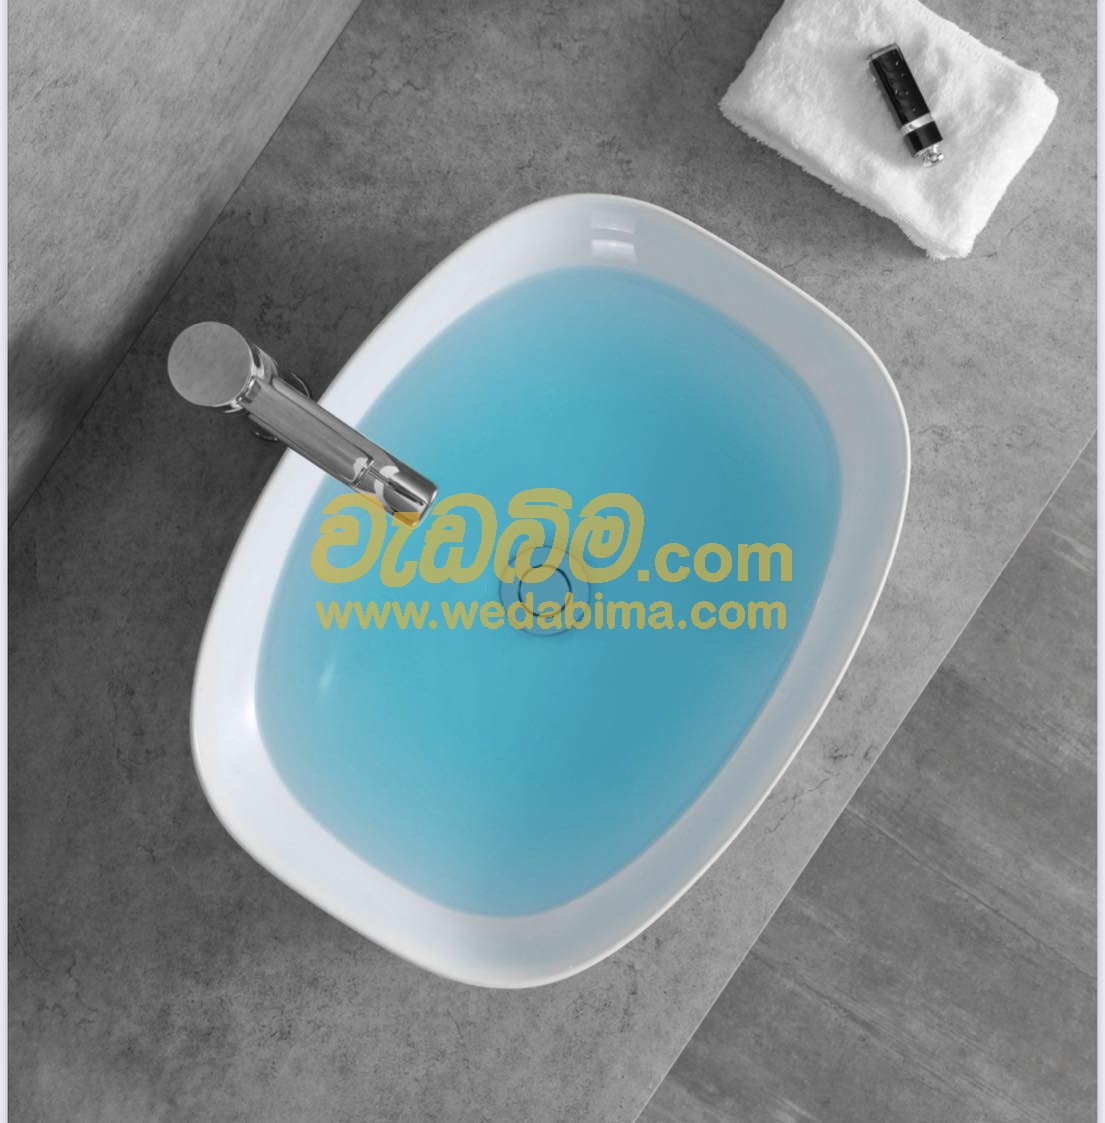 Cover image for ceramic wash basin price in sri lanka